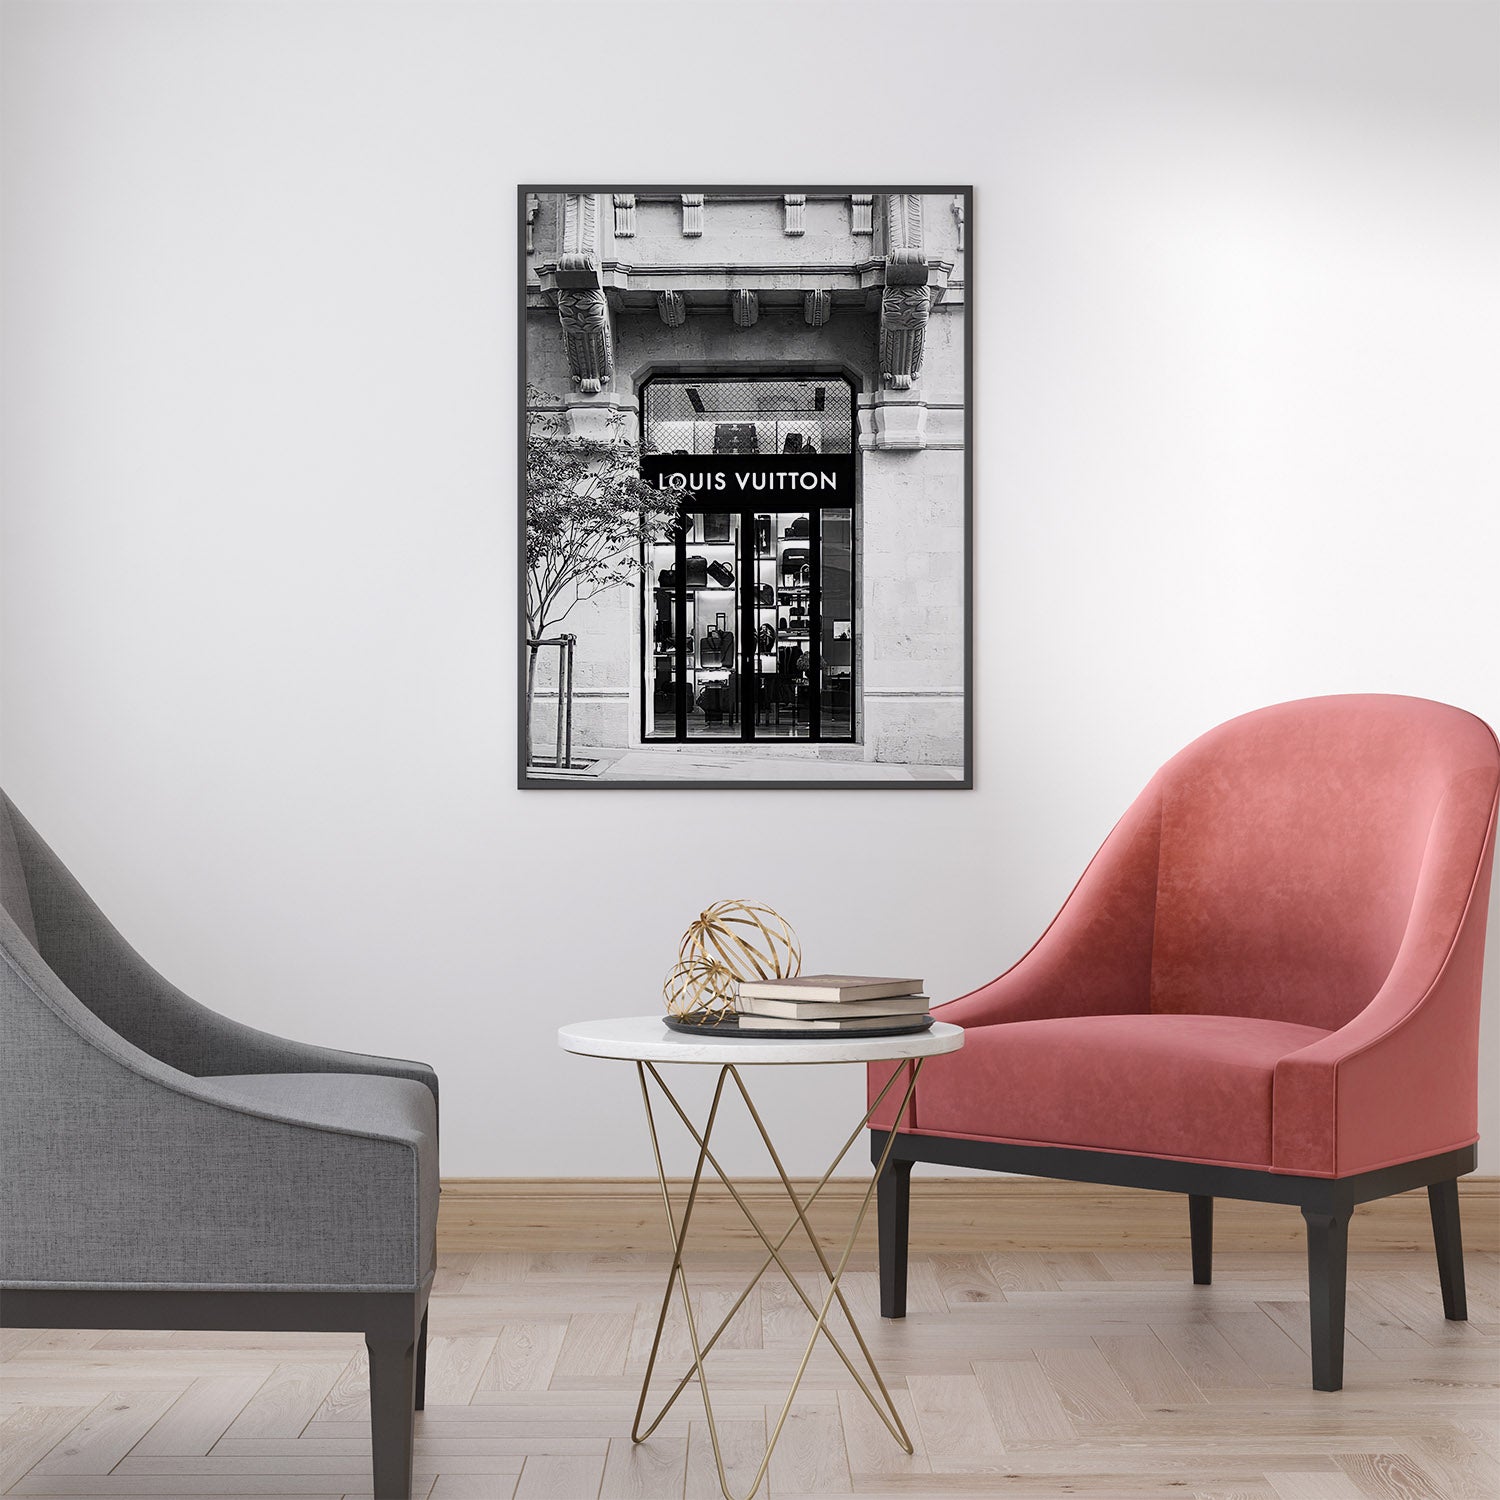 Louis Vuitton wall art in modern living room